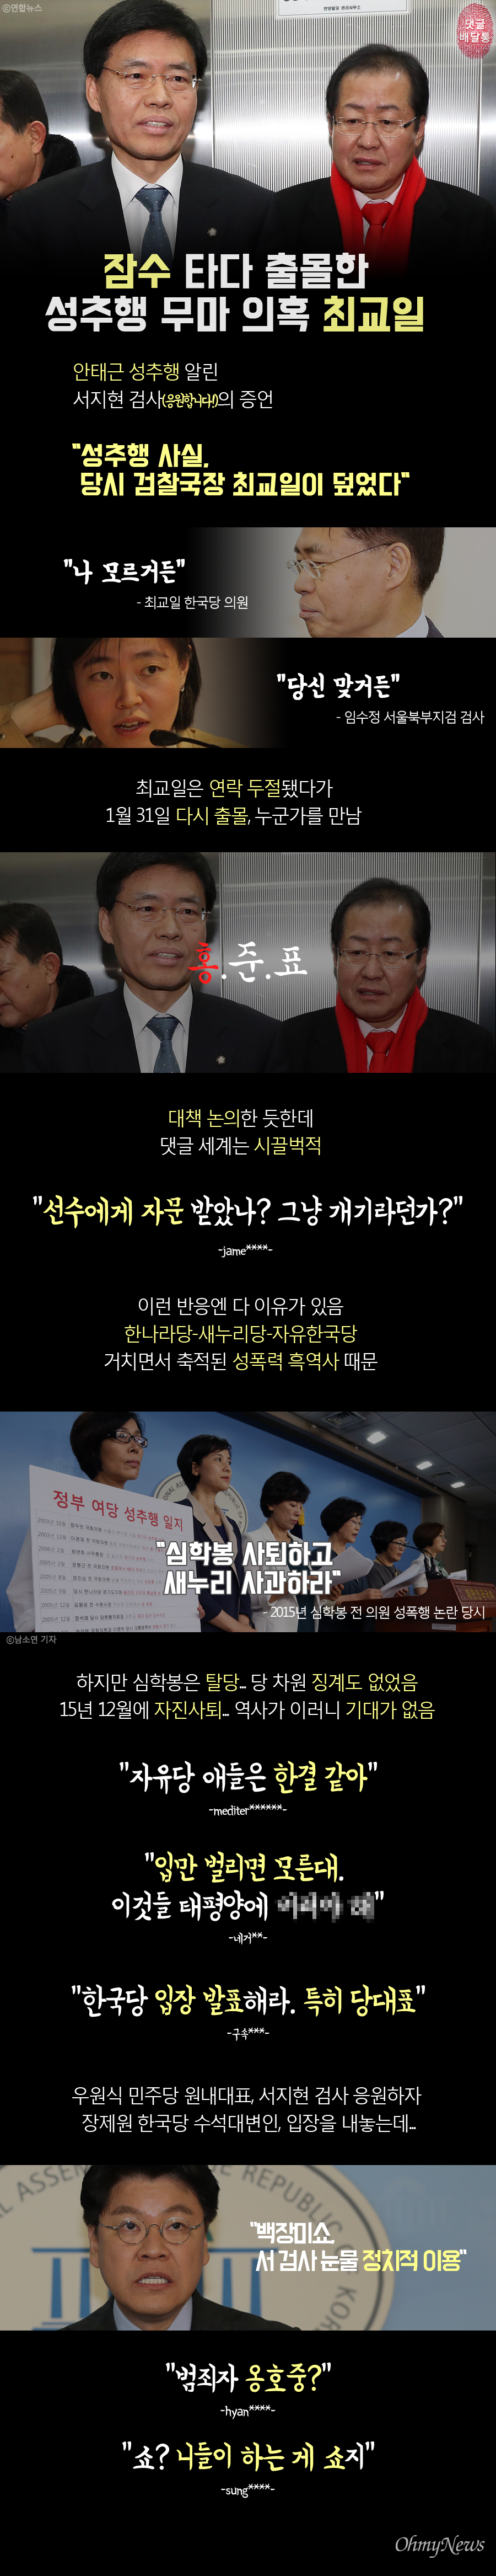 [댓글 배달통] 한국당에 쏟아지는 비판